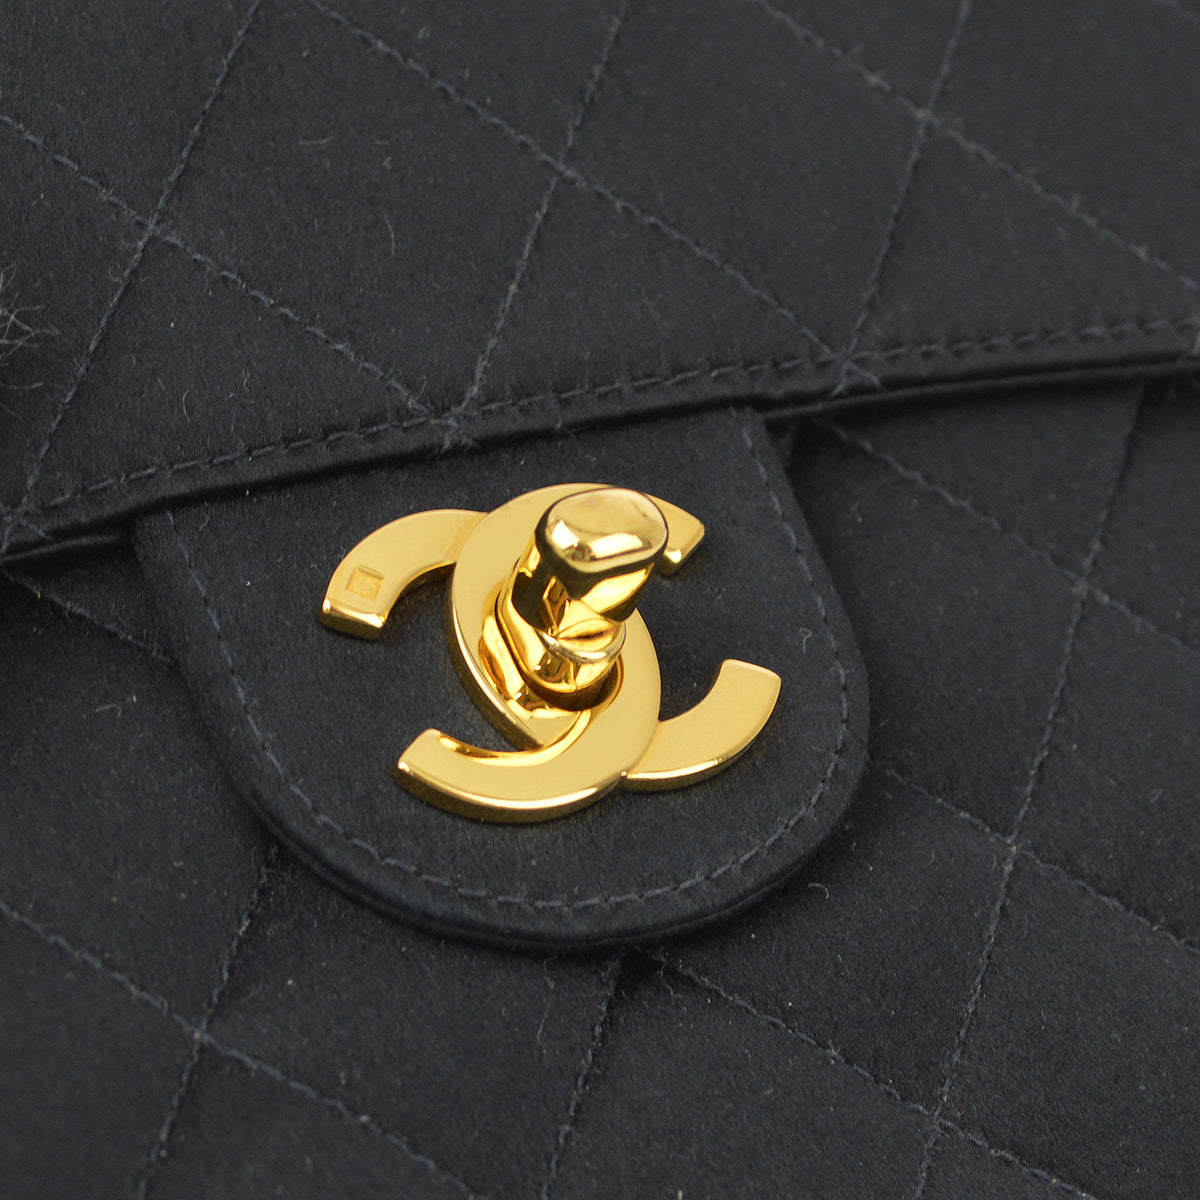 Chanel 黑色缎面迷你經典方形翻蓋包 17